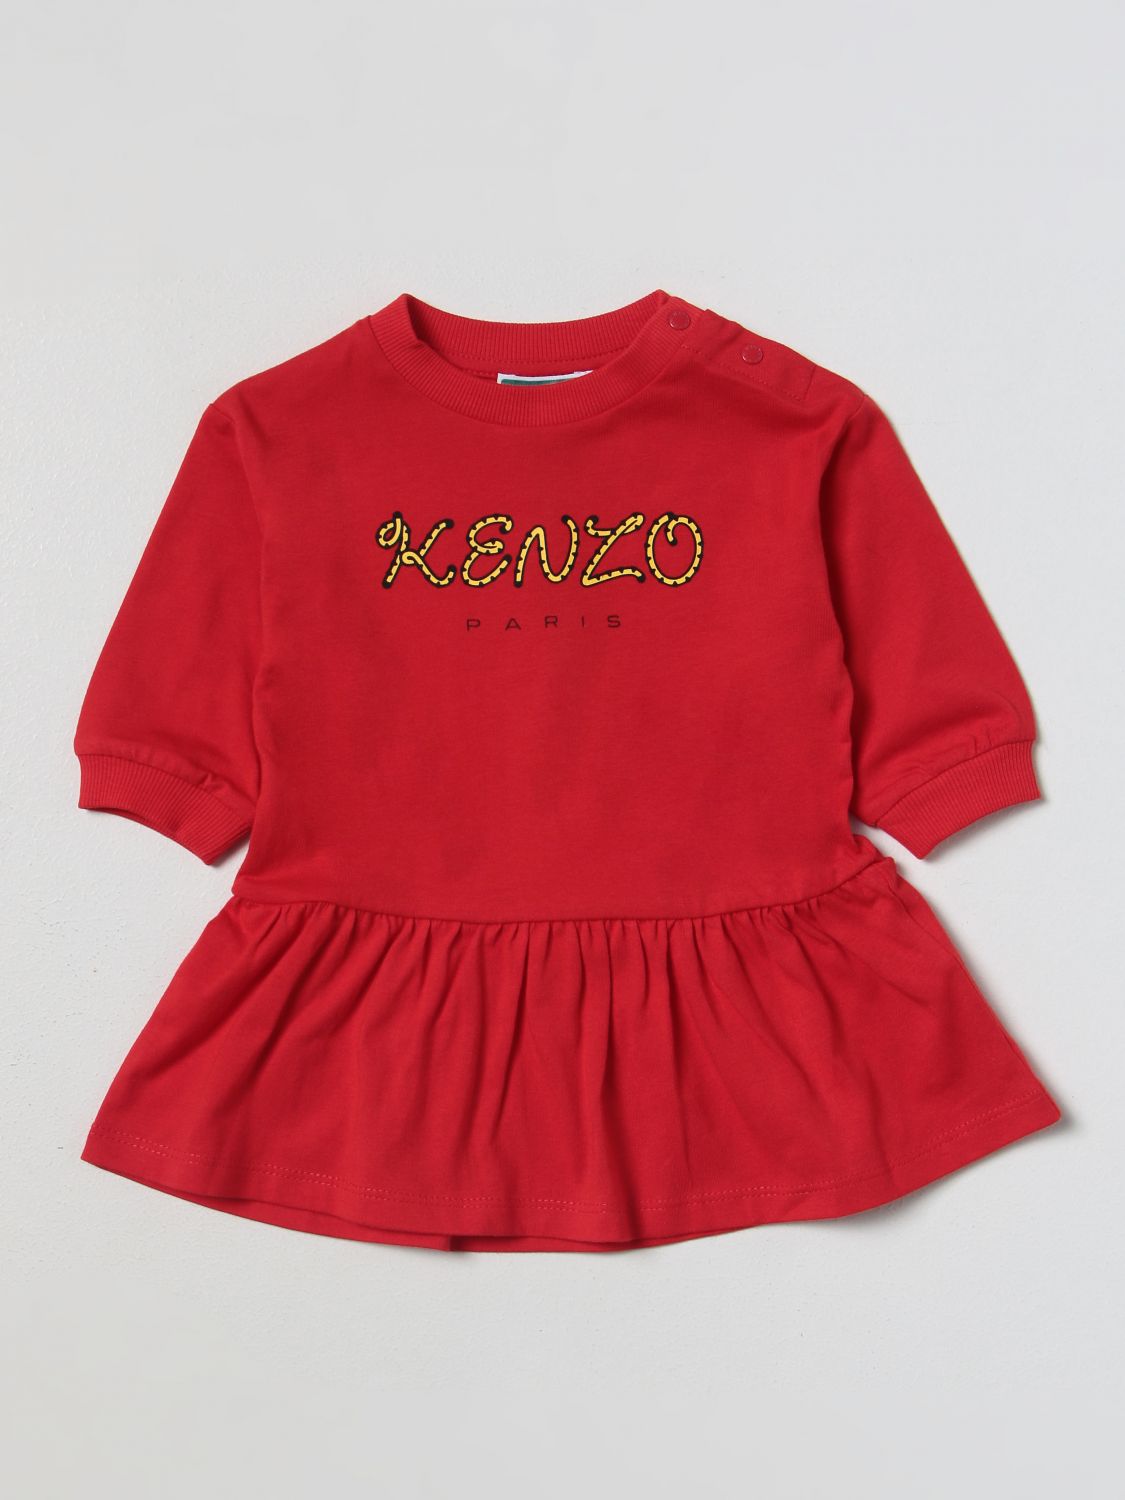 Kenzo Babies' Romper  Kids Kids Color Red